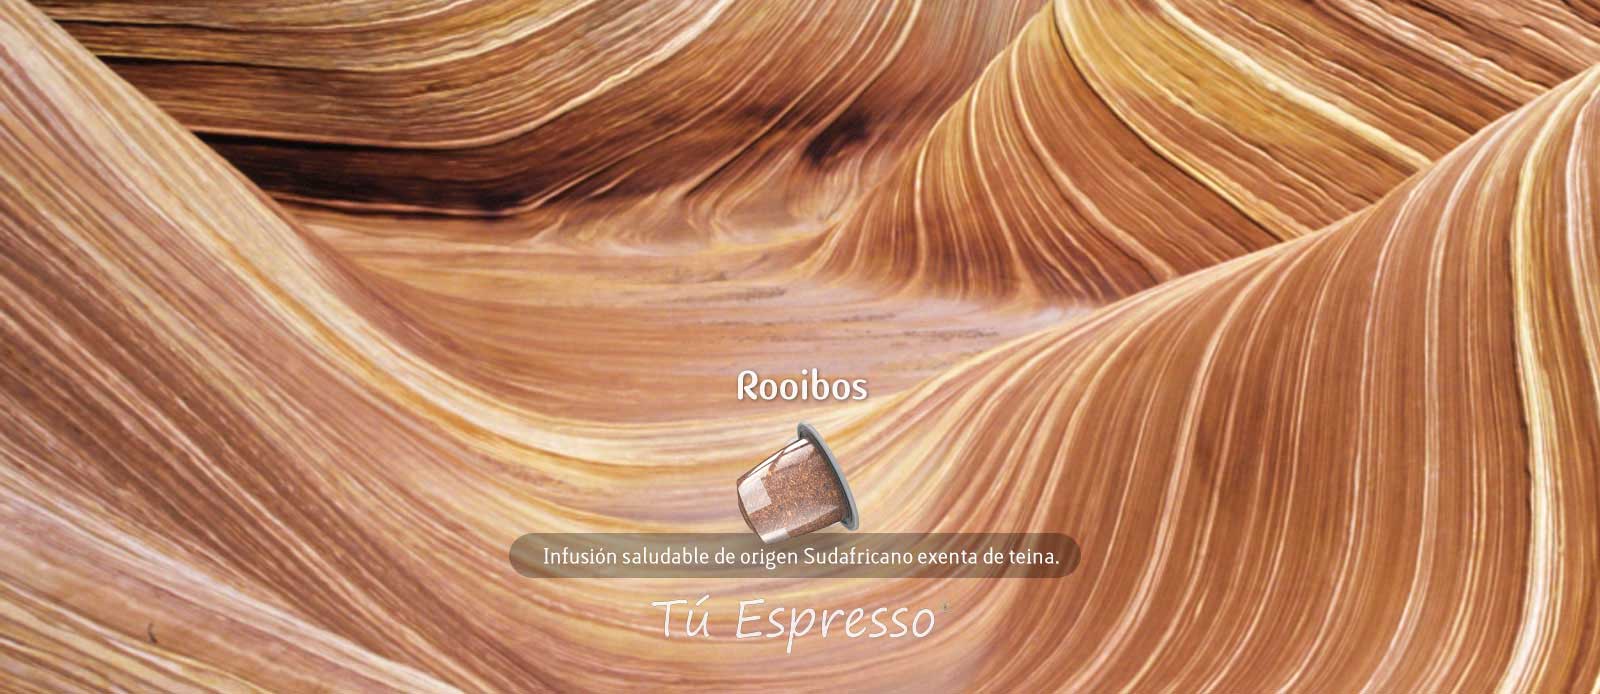 Rooibos capsula de cafe compatible te tu espresso